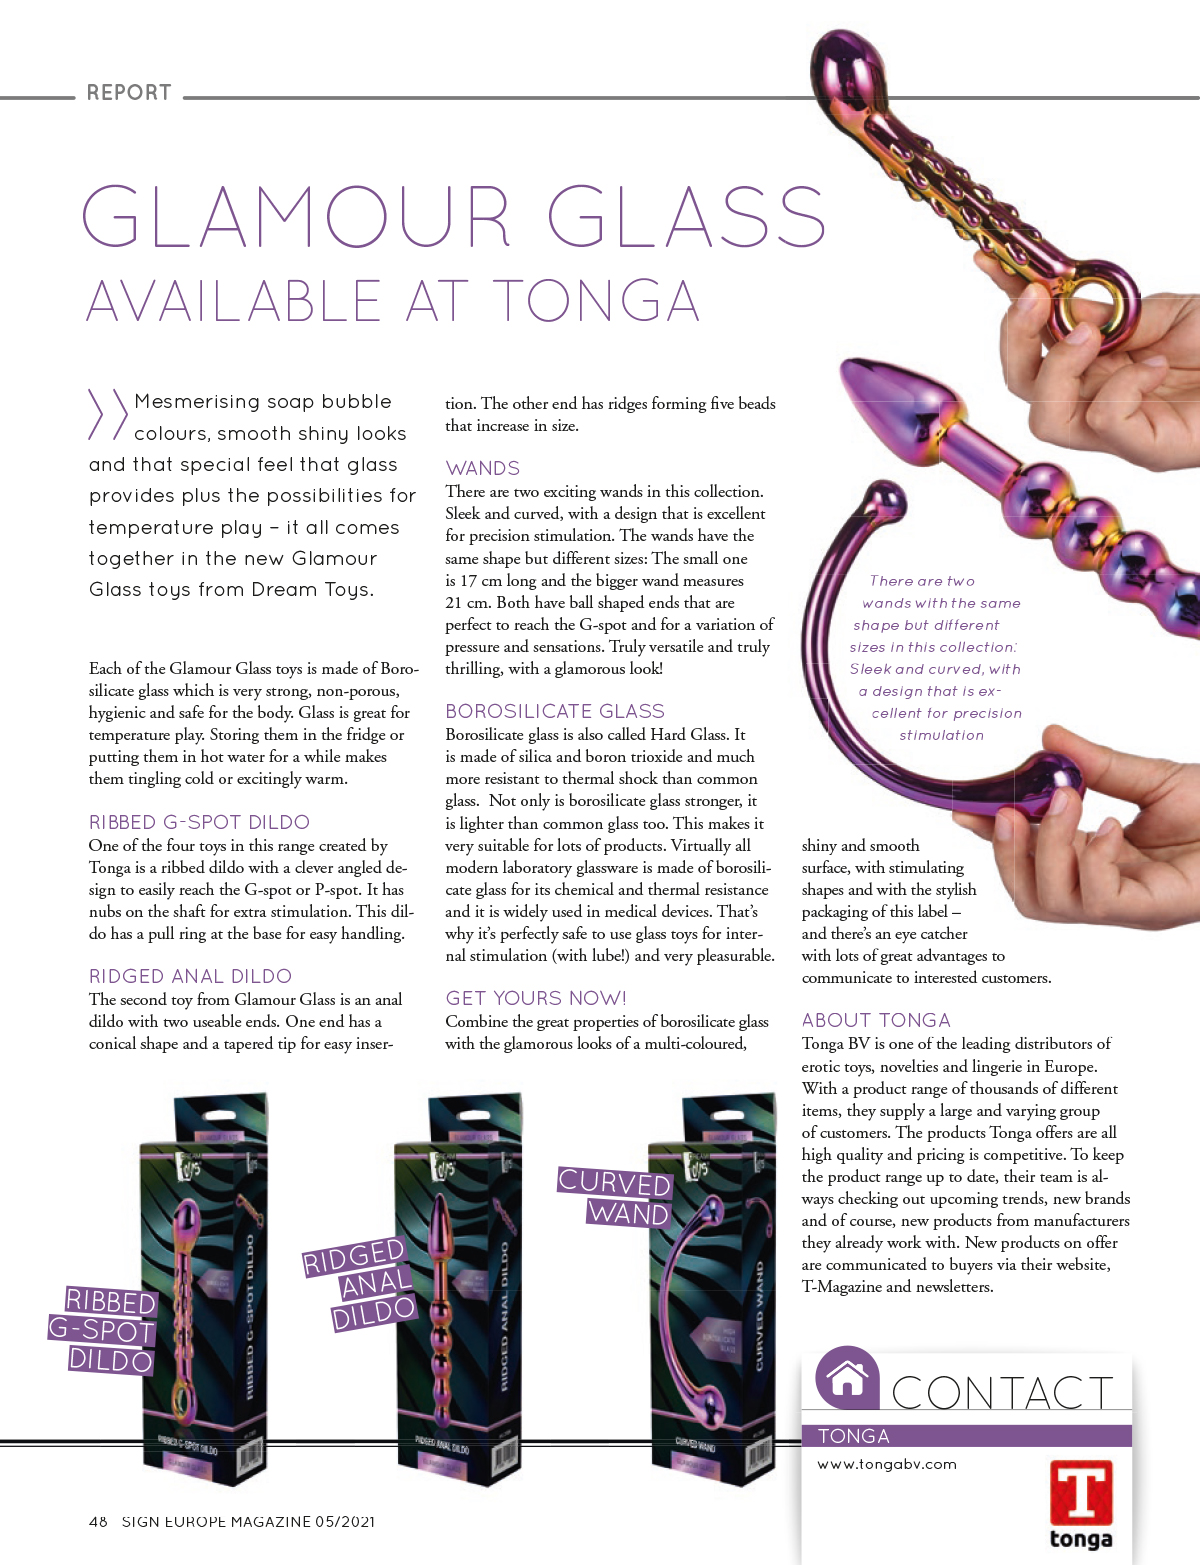 2021-05 Sign EU - Dream Toys Glamour Glass